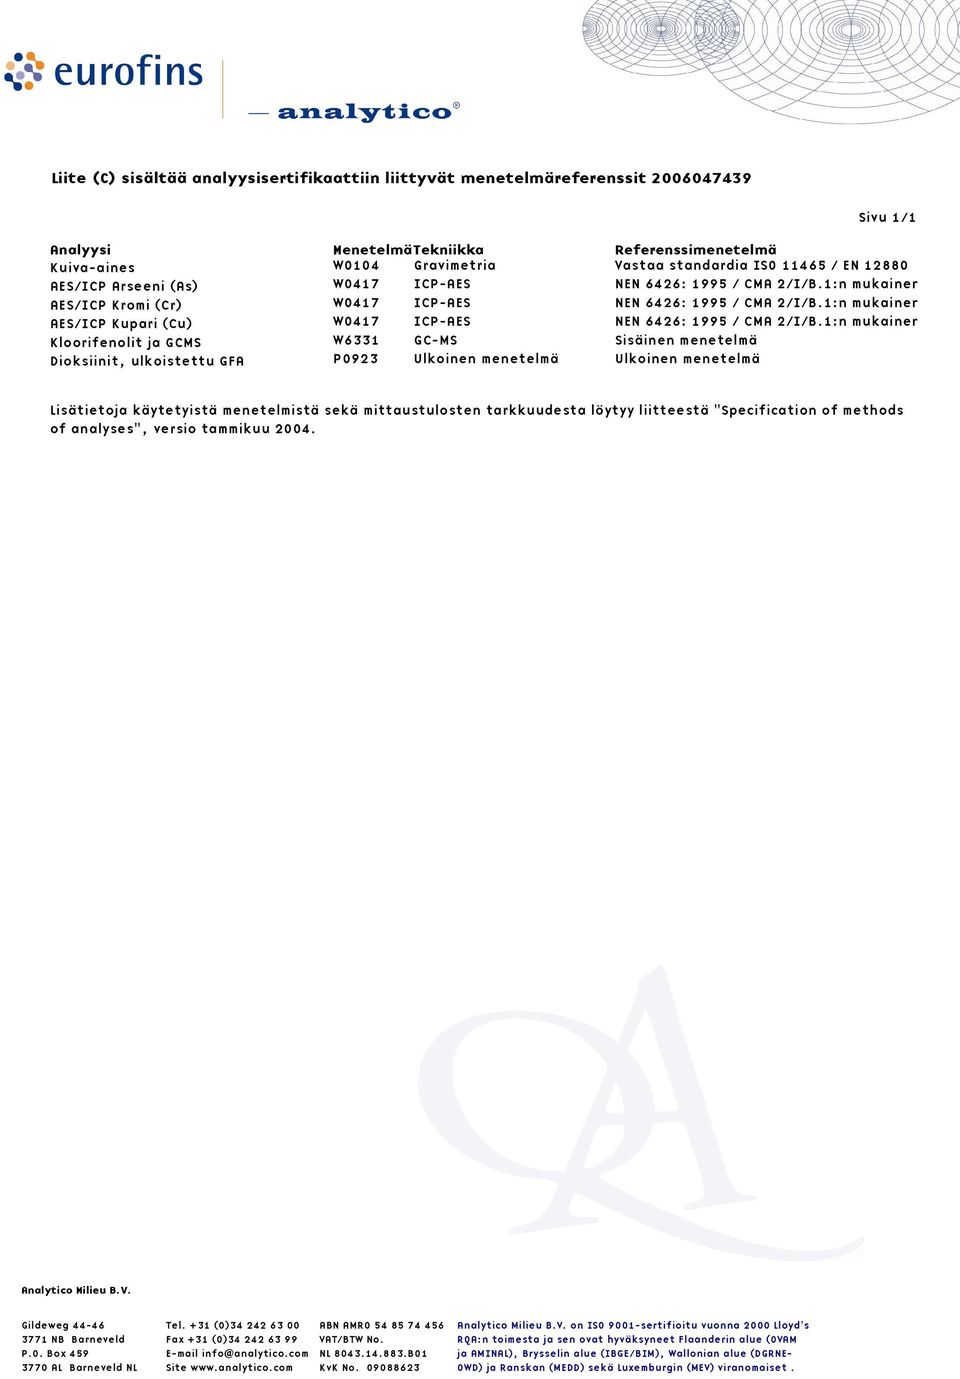 1:n mukainen AES/ICP Kupari (Cu) W0417 ICP-AES NEN 6426: 1995 / CMA 2/I/B.